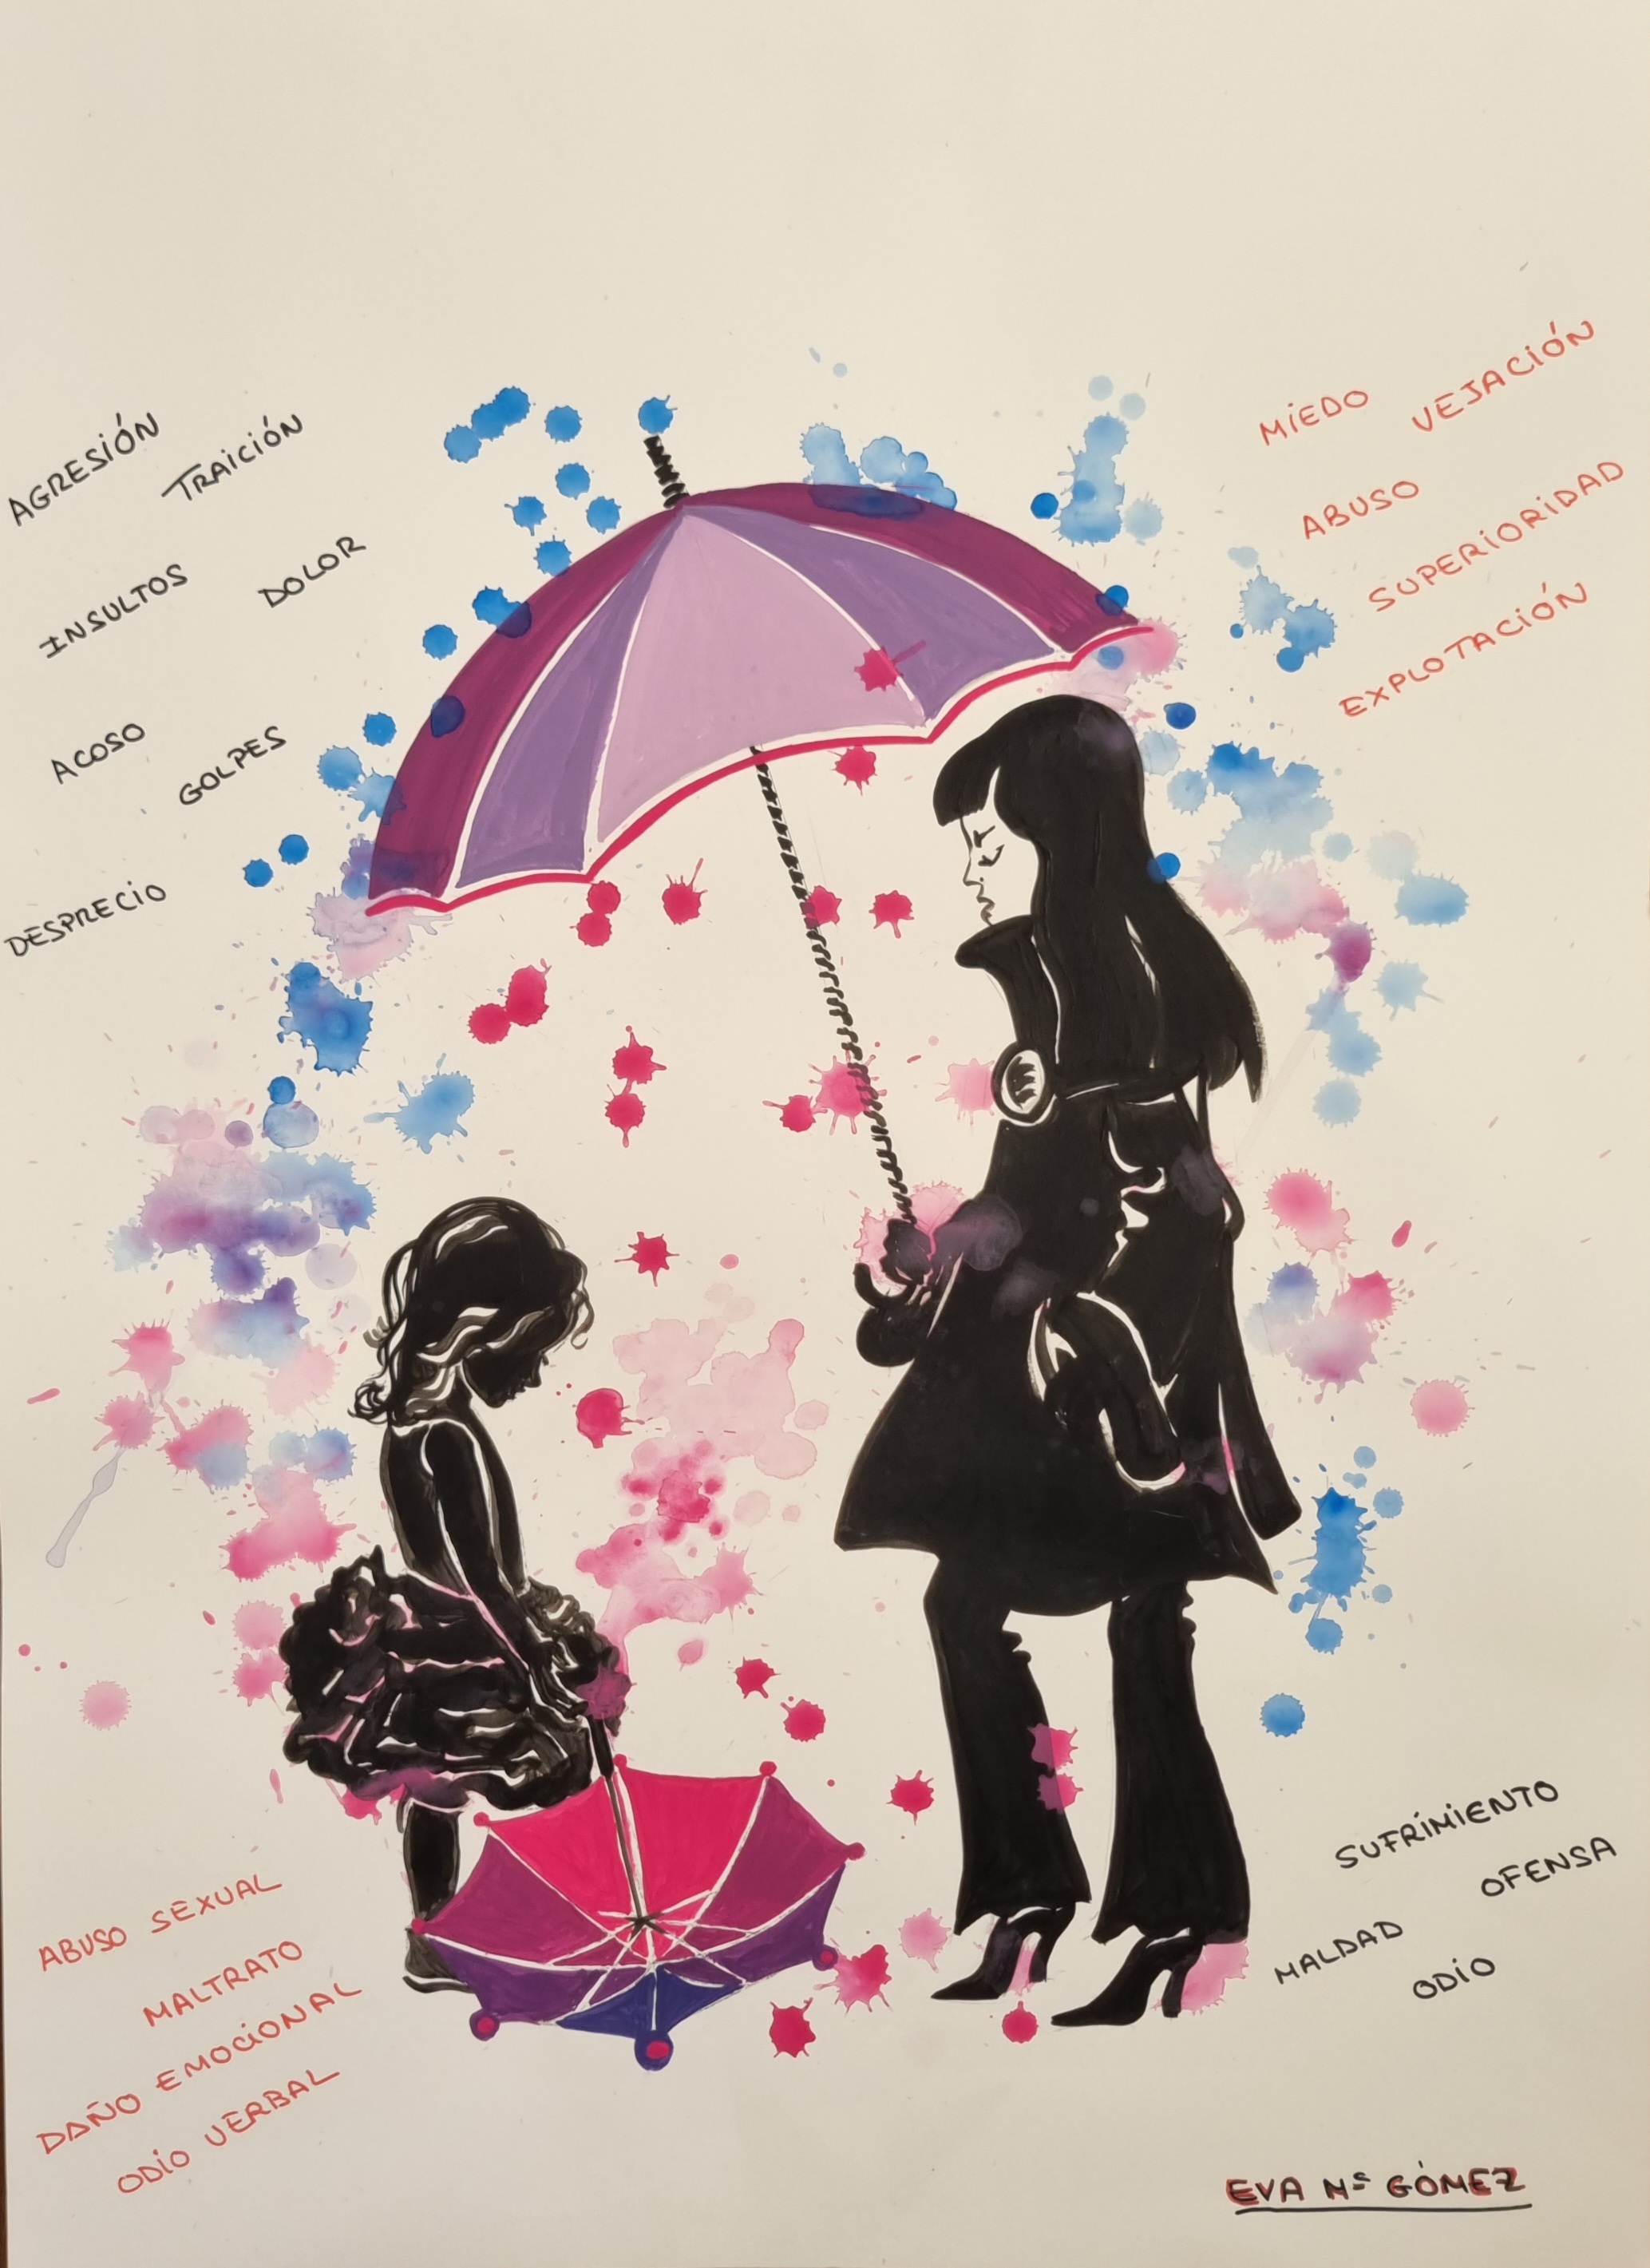 Dibujo de una mujer cubriendo con un paraguas a una niña contra los males del mundo representados por palabras como si fueran gotas de lluvia 